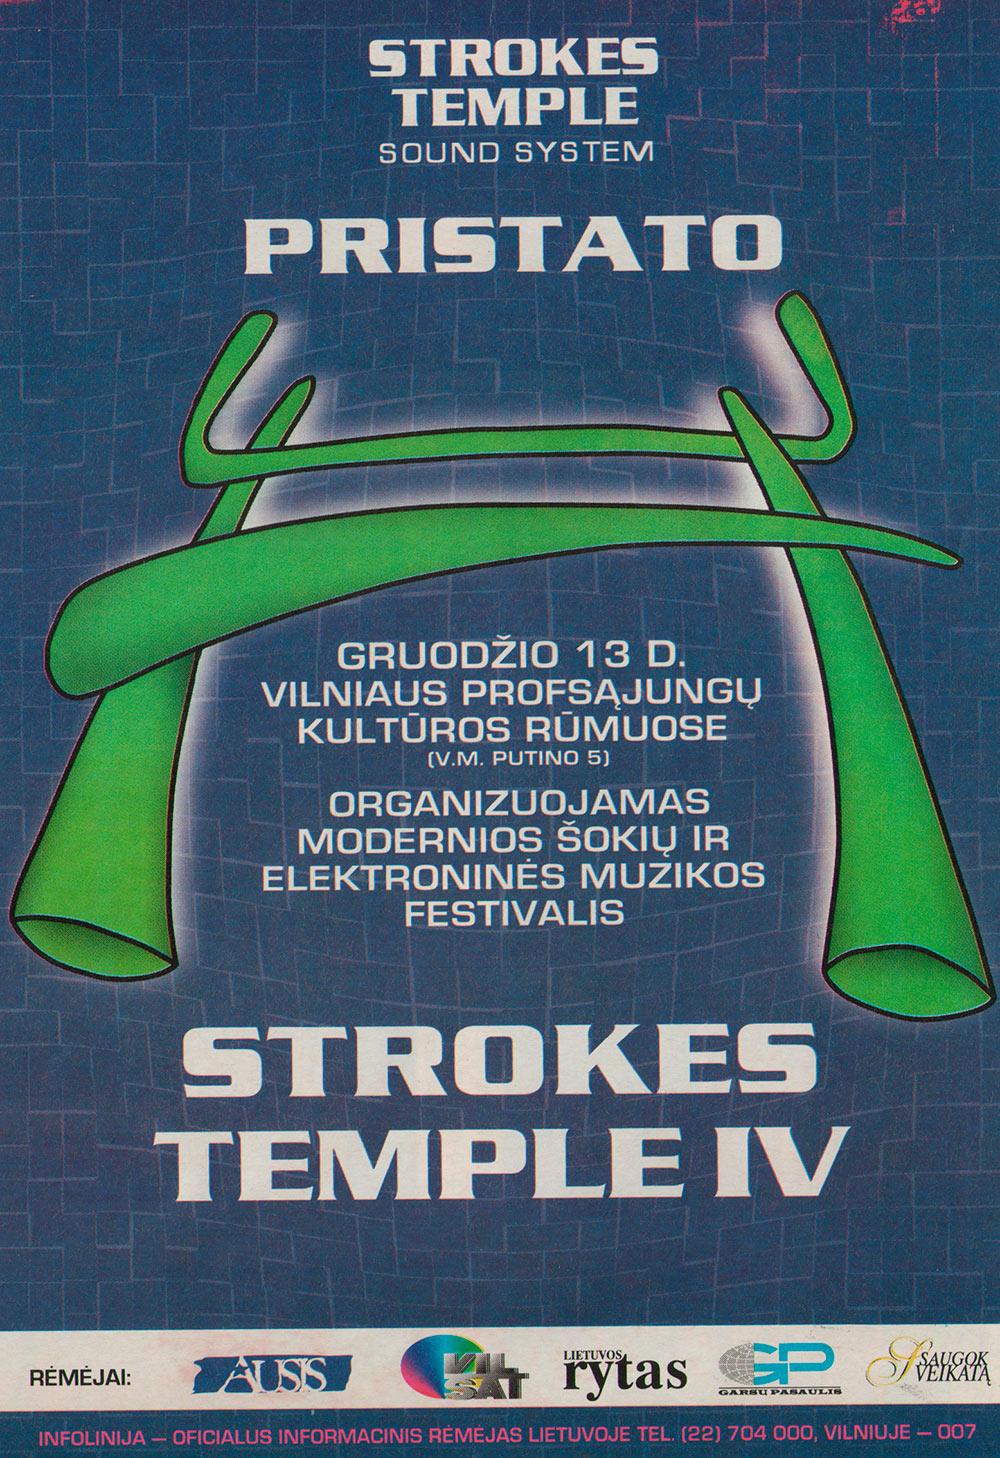 Strokes Temple Sound Systems pristato „Strokes Temple IV“